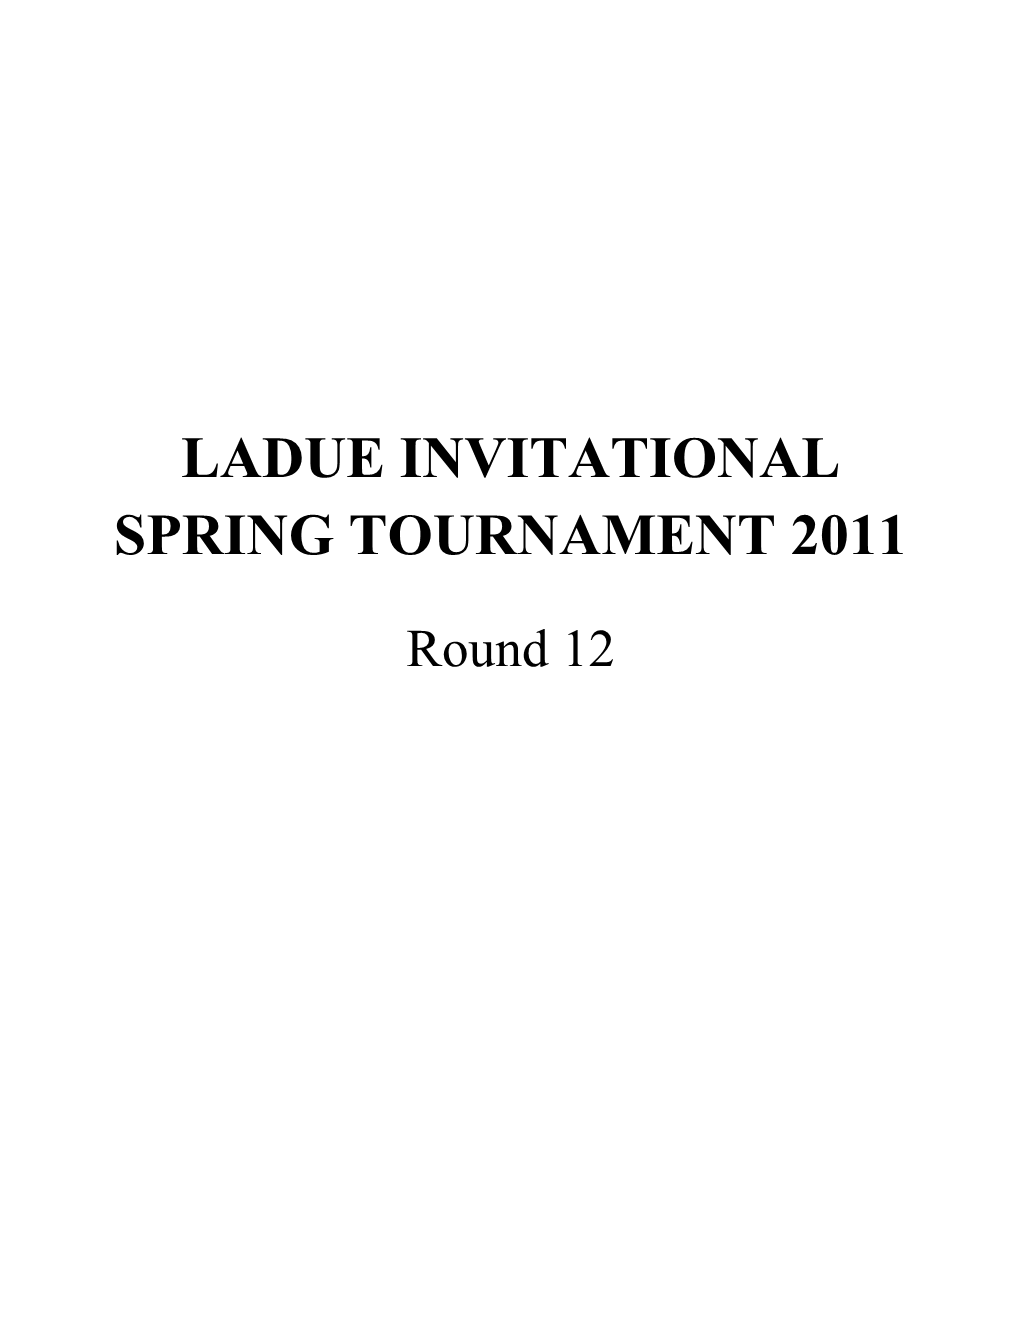 Ladue Invitational Spring Tournament 2011